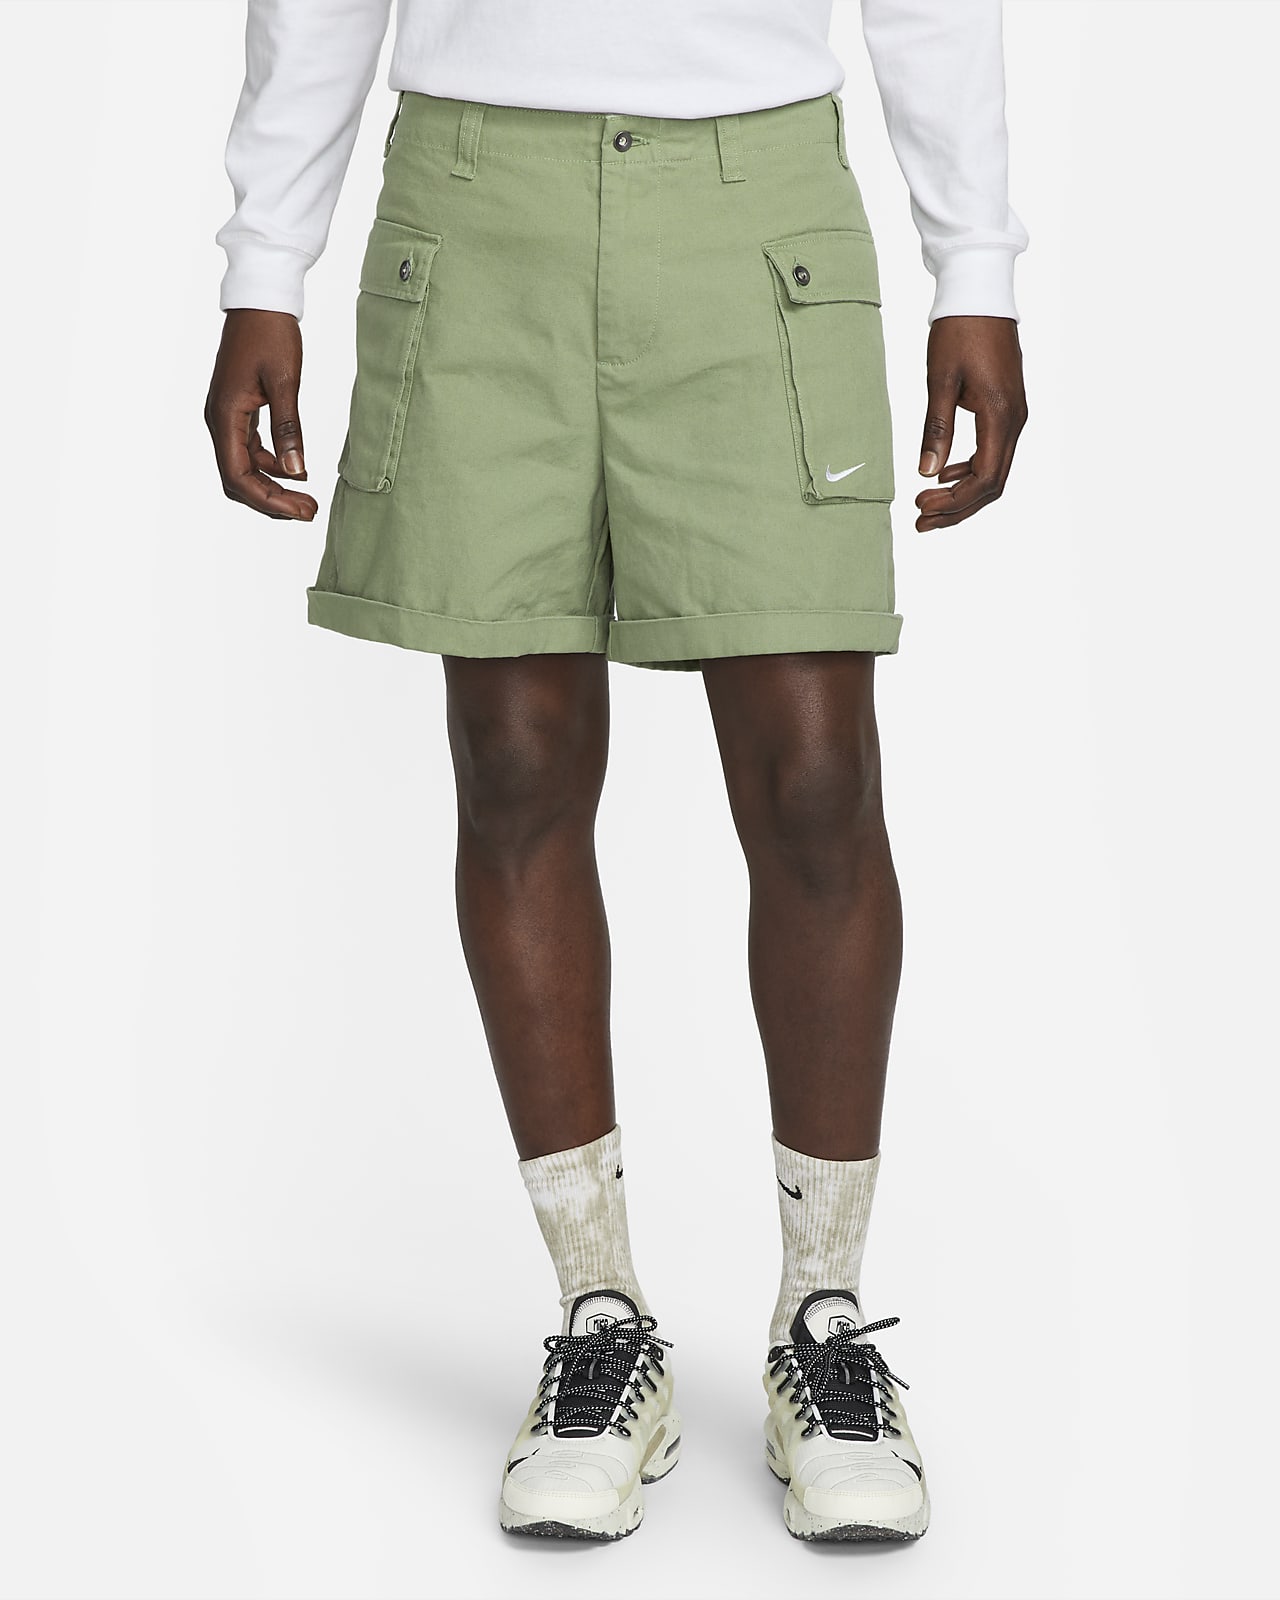 Nike Life Men's Woven P44 Cargo Shorts